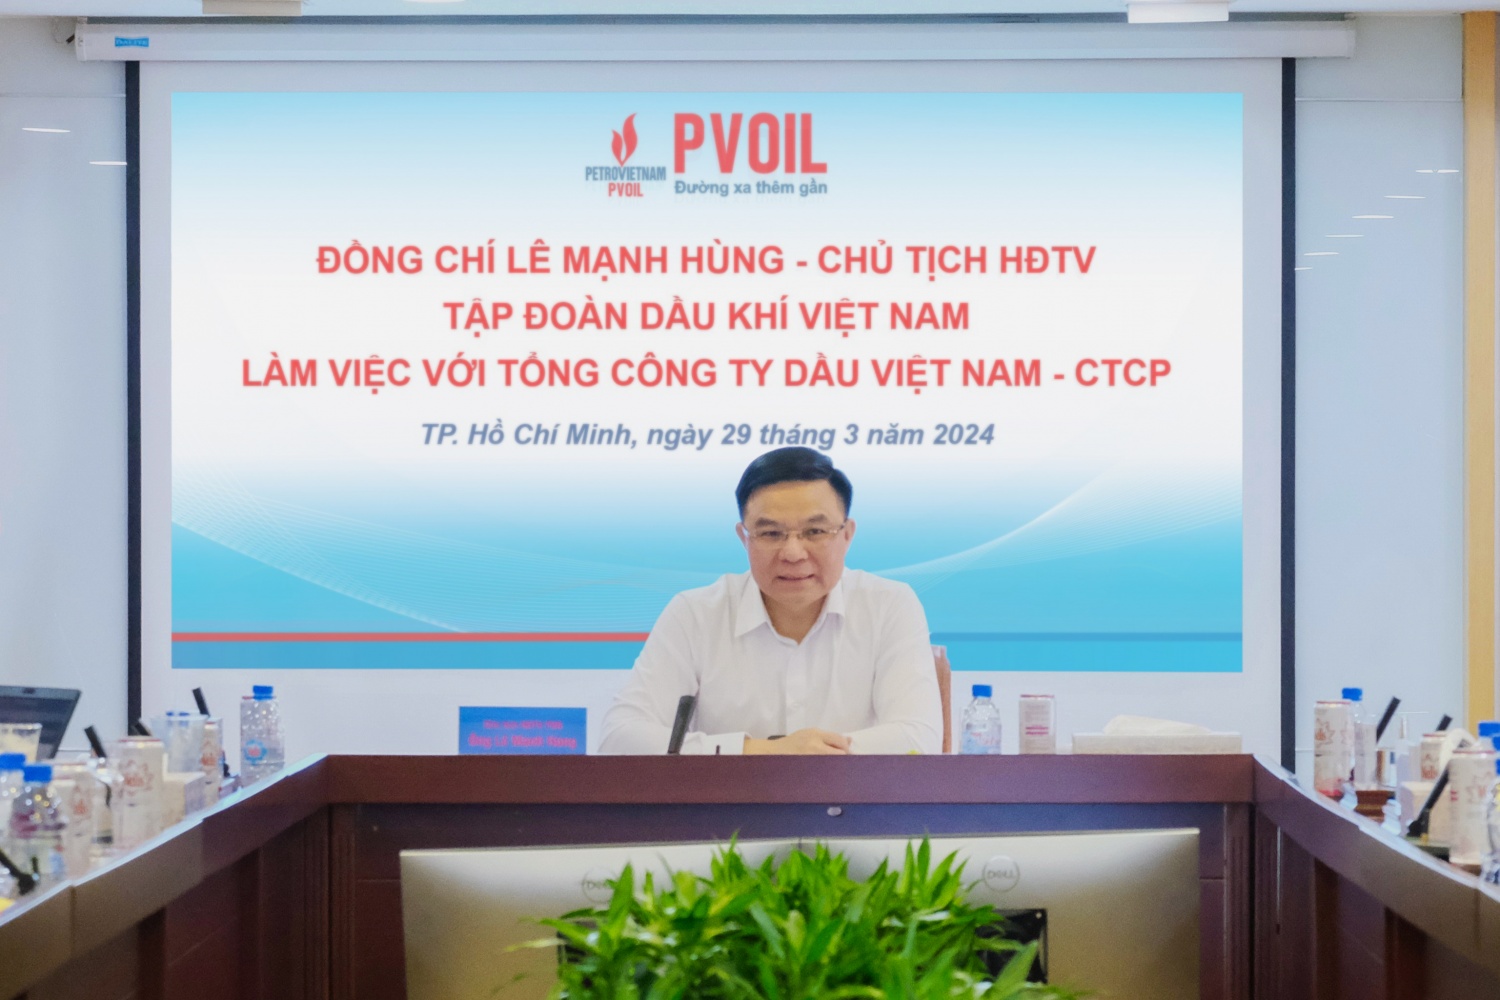 Ông Lê Mạnh Hùng – Chủ tịch HĐTV Tập đoàn Dầu khí Việt Nam chủ trì buổi làm việc